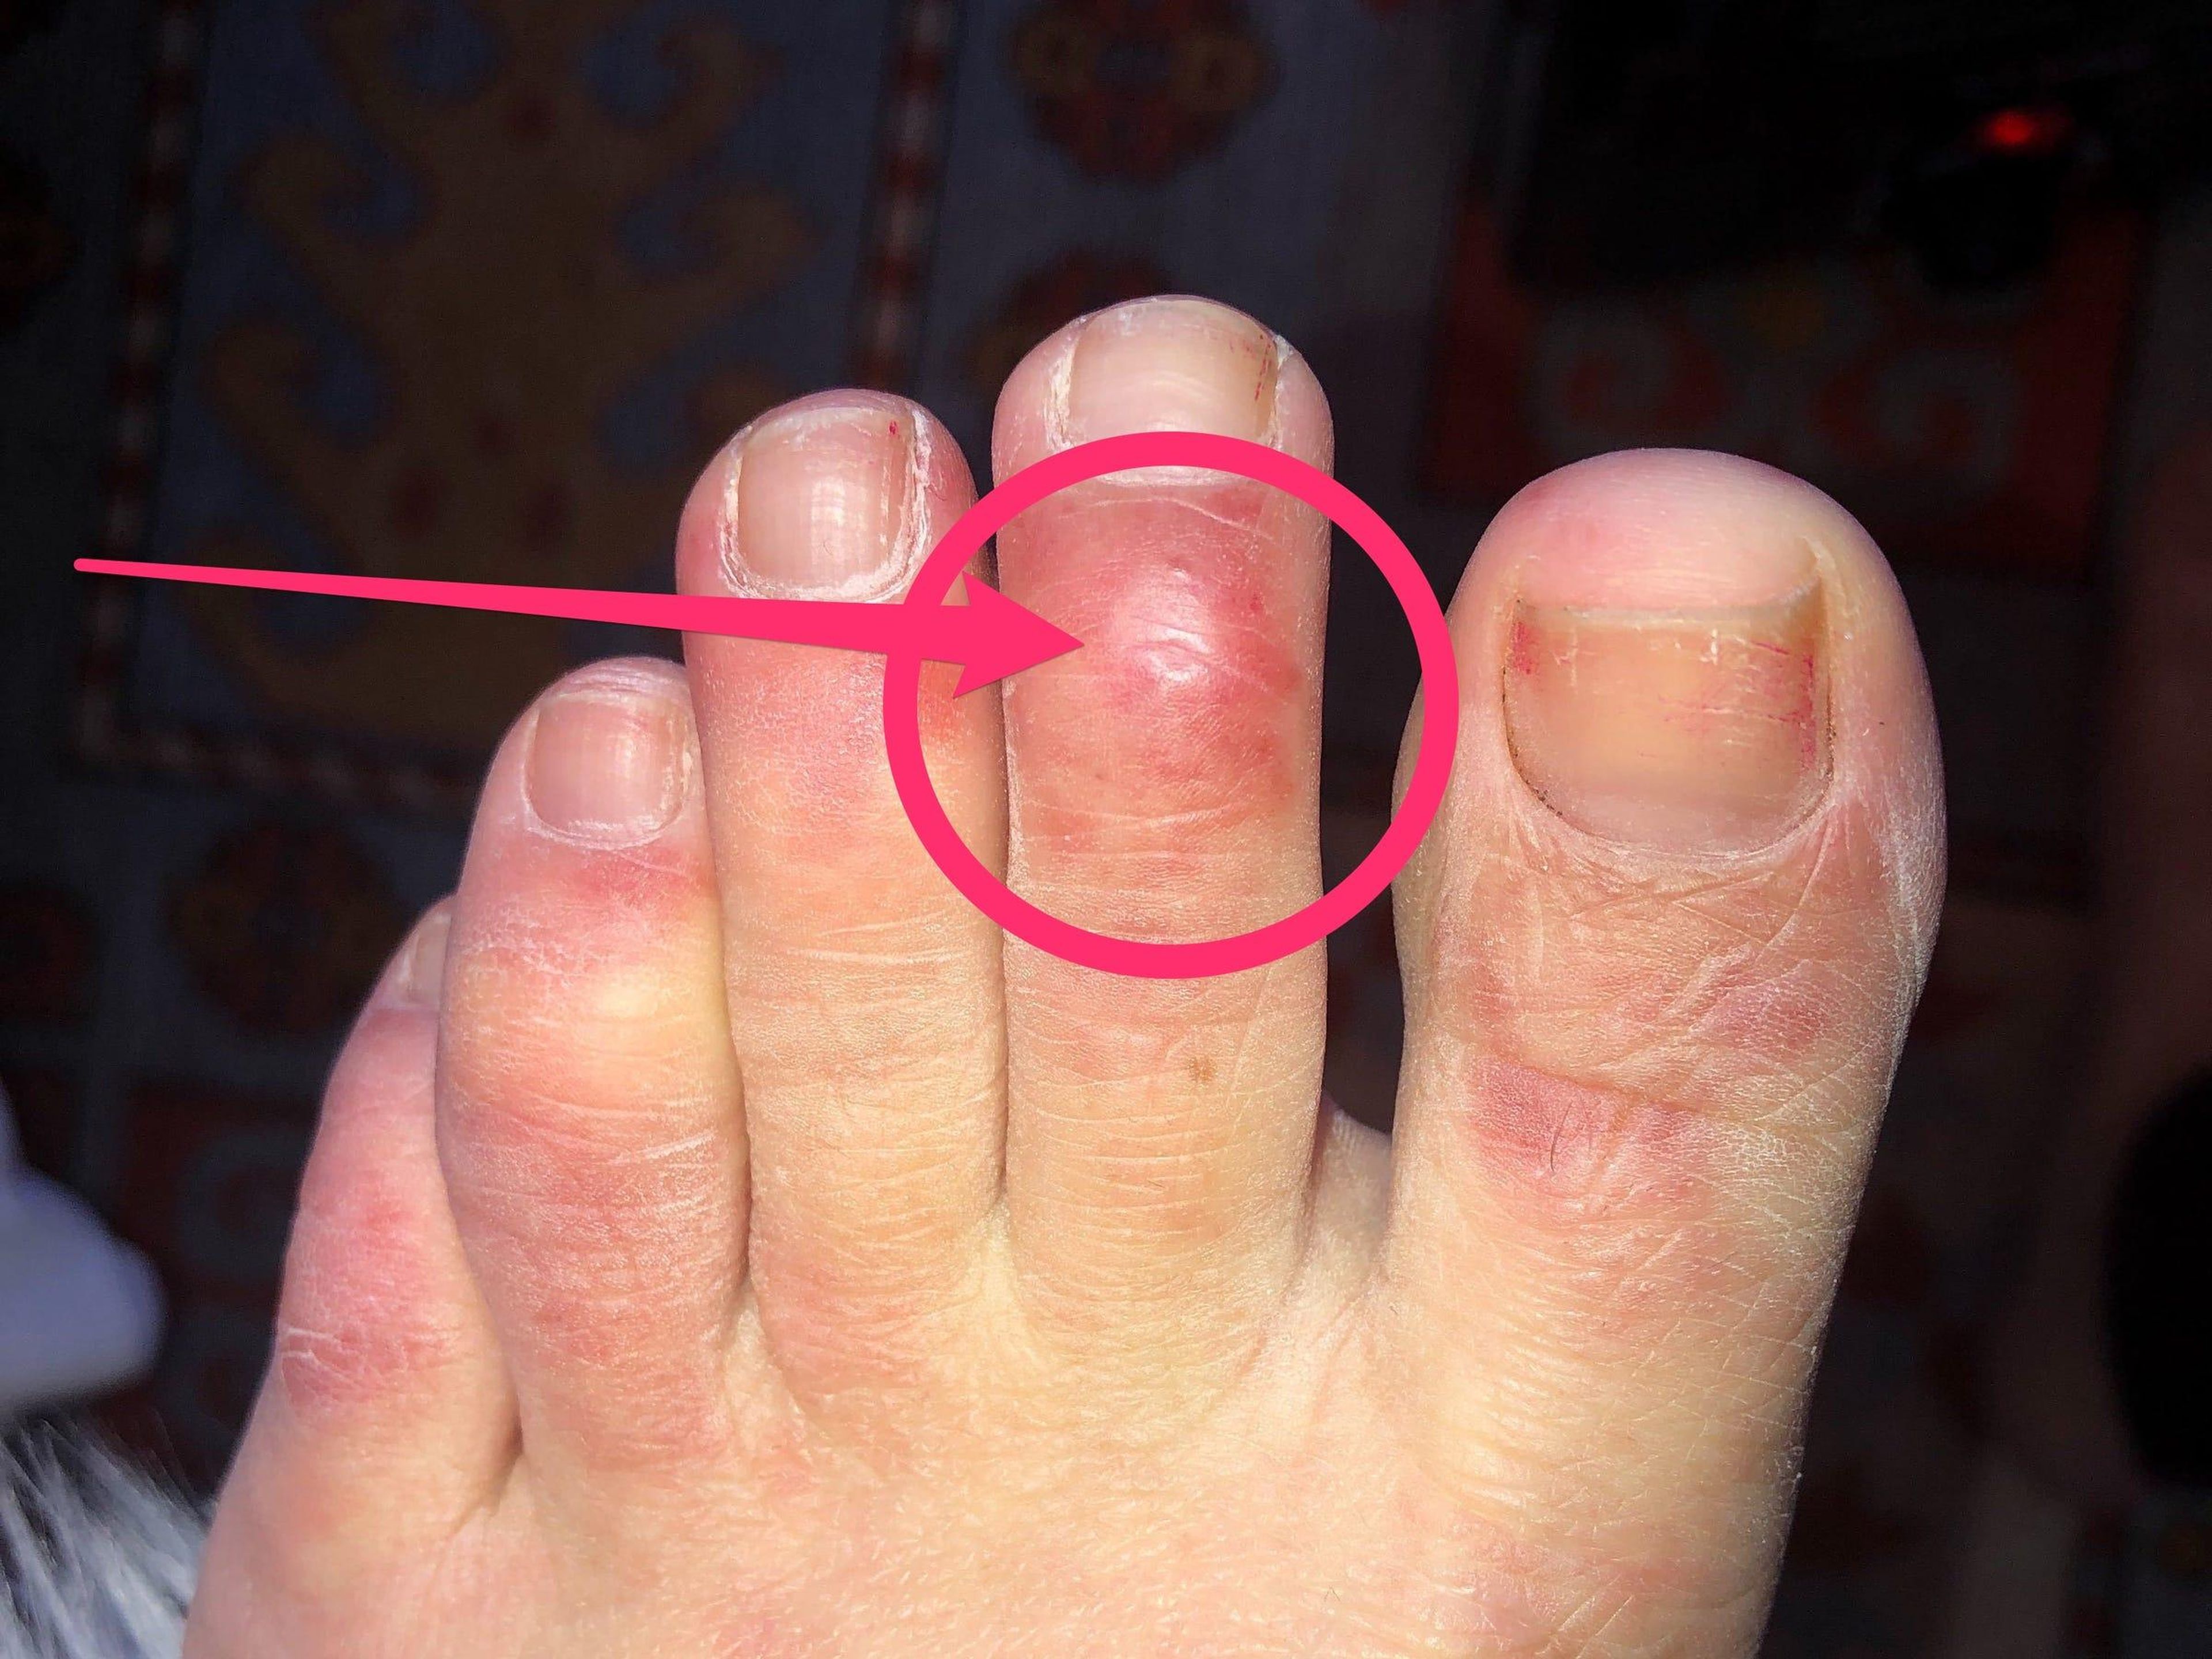 Una nueva investigación ofrece detalles sobre el misterioso síntoma en los dedos de los pies en relación con el COVID-19.